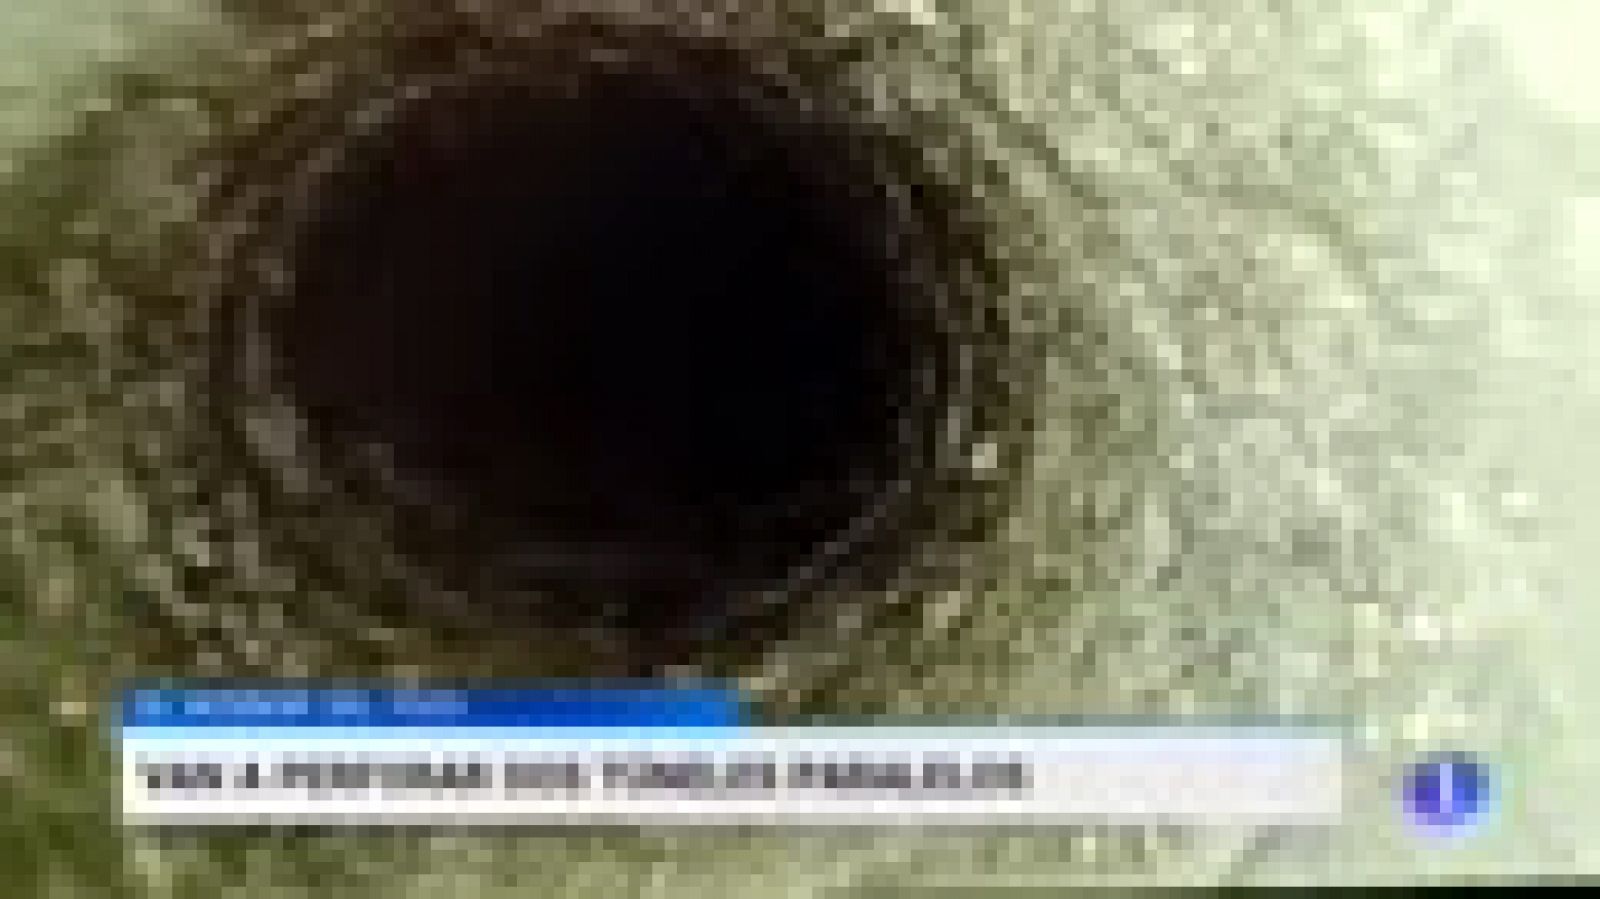 Rescate Julen: Los técnicos deciden abrir dos túneles verticales para intentar rescatar a Julen